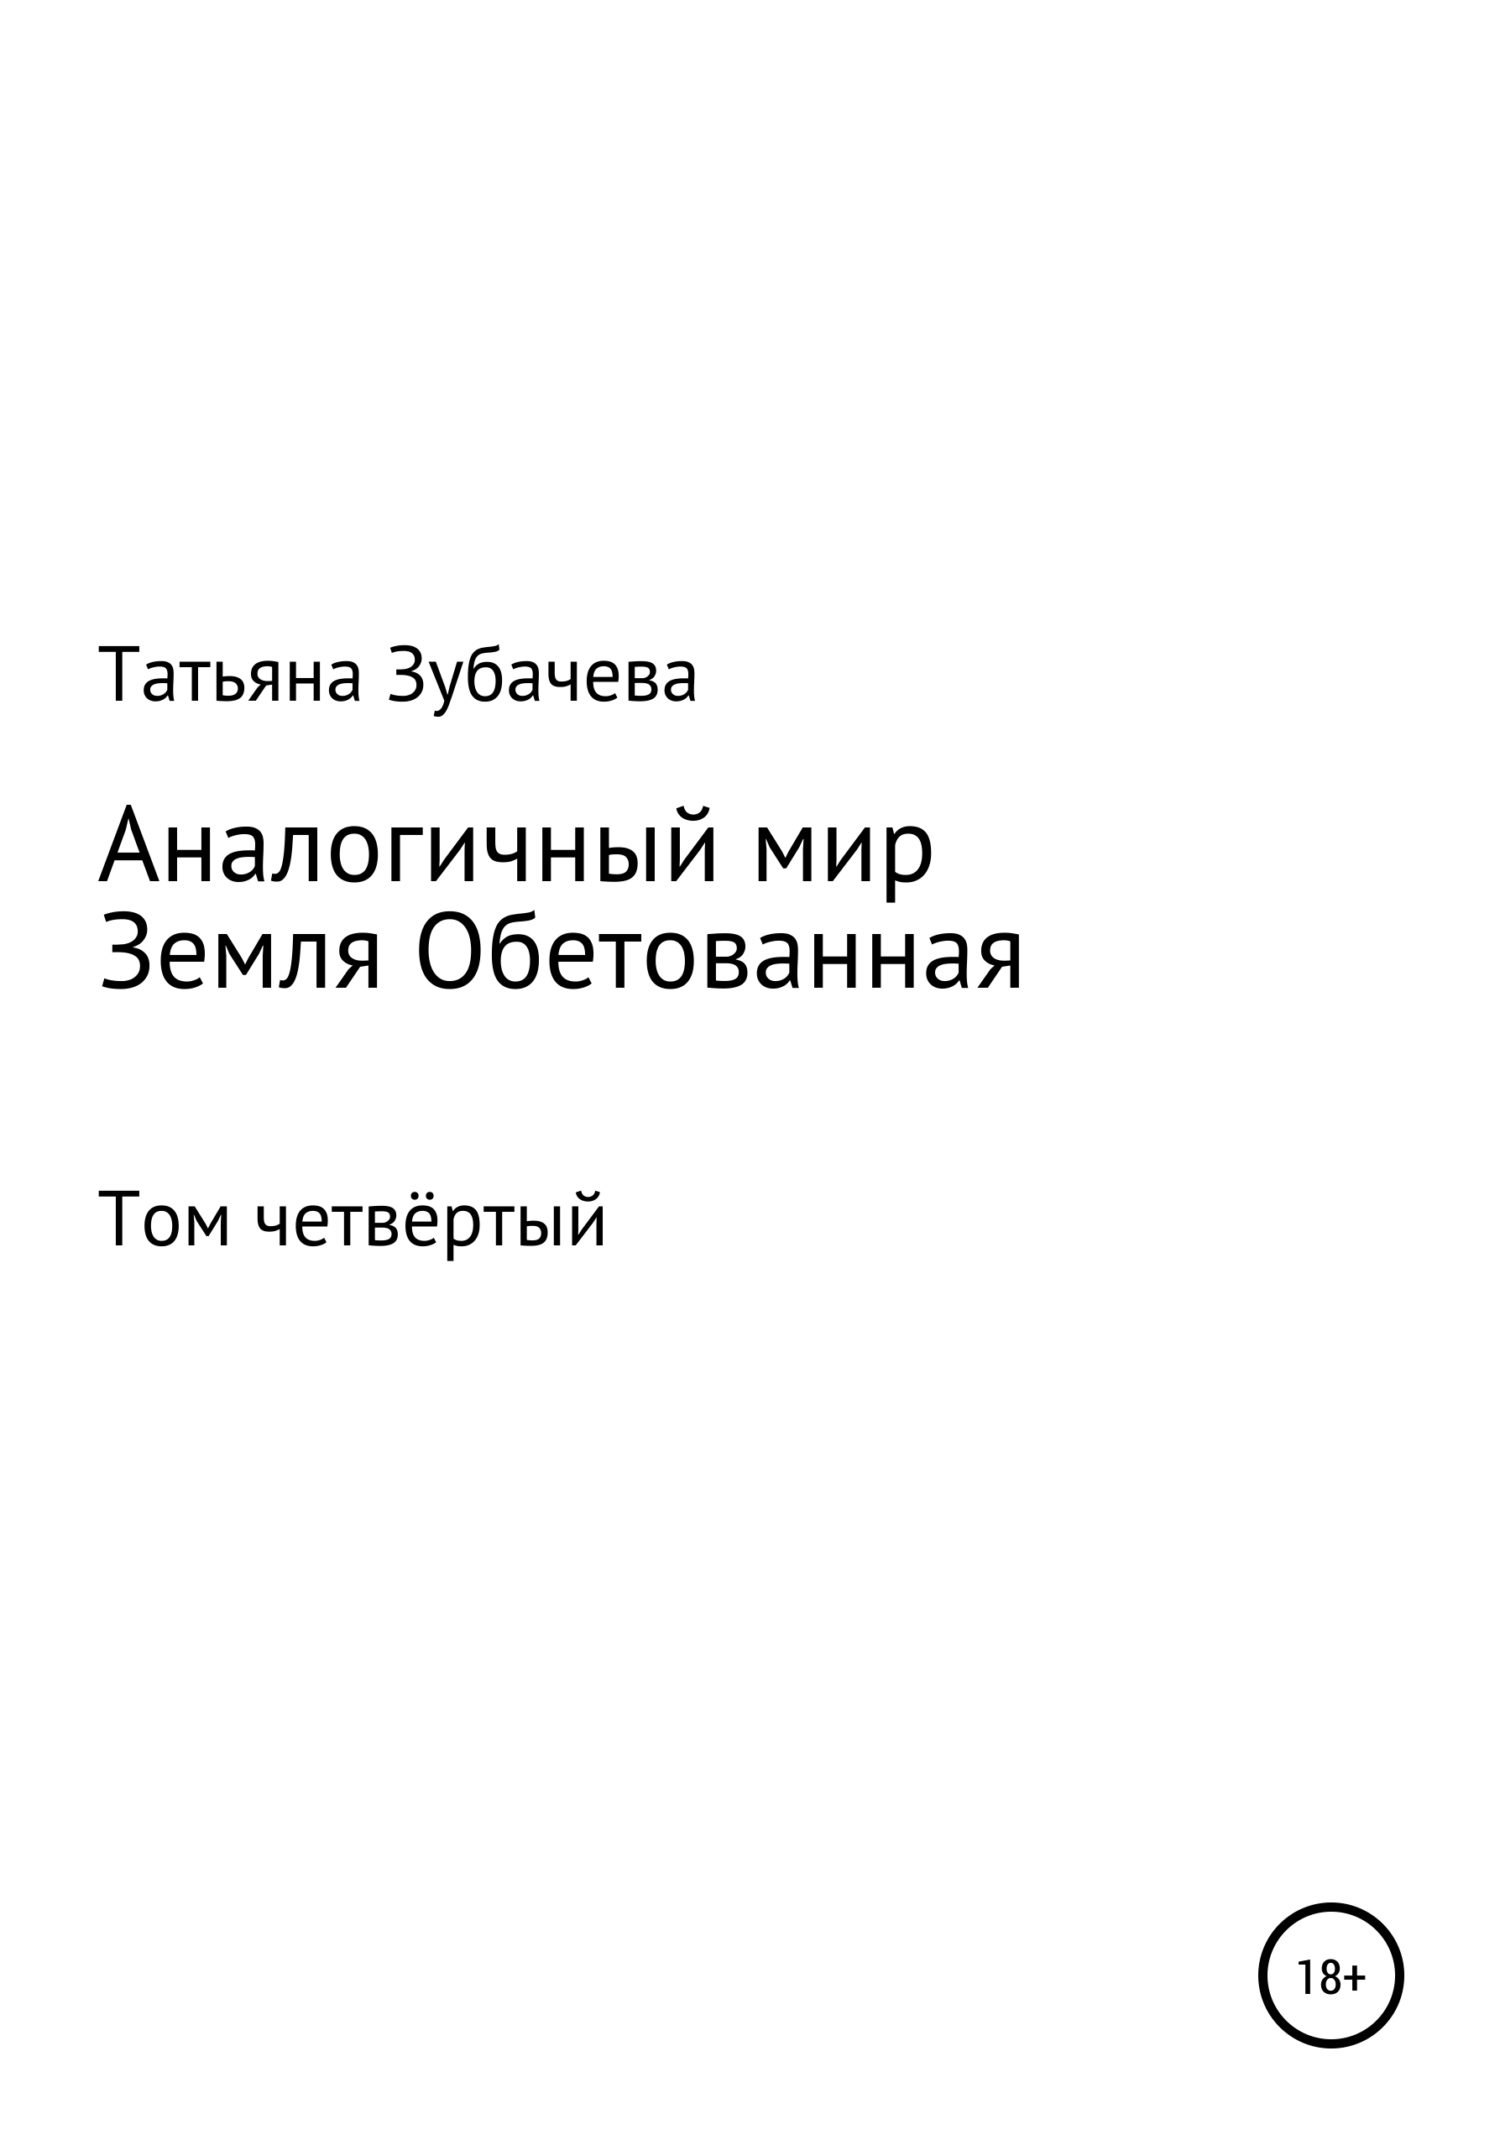 Земля обетованная - Татьяна Николаевна Зубачева